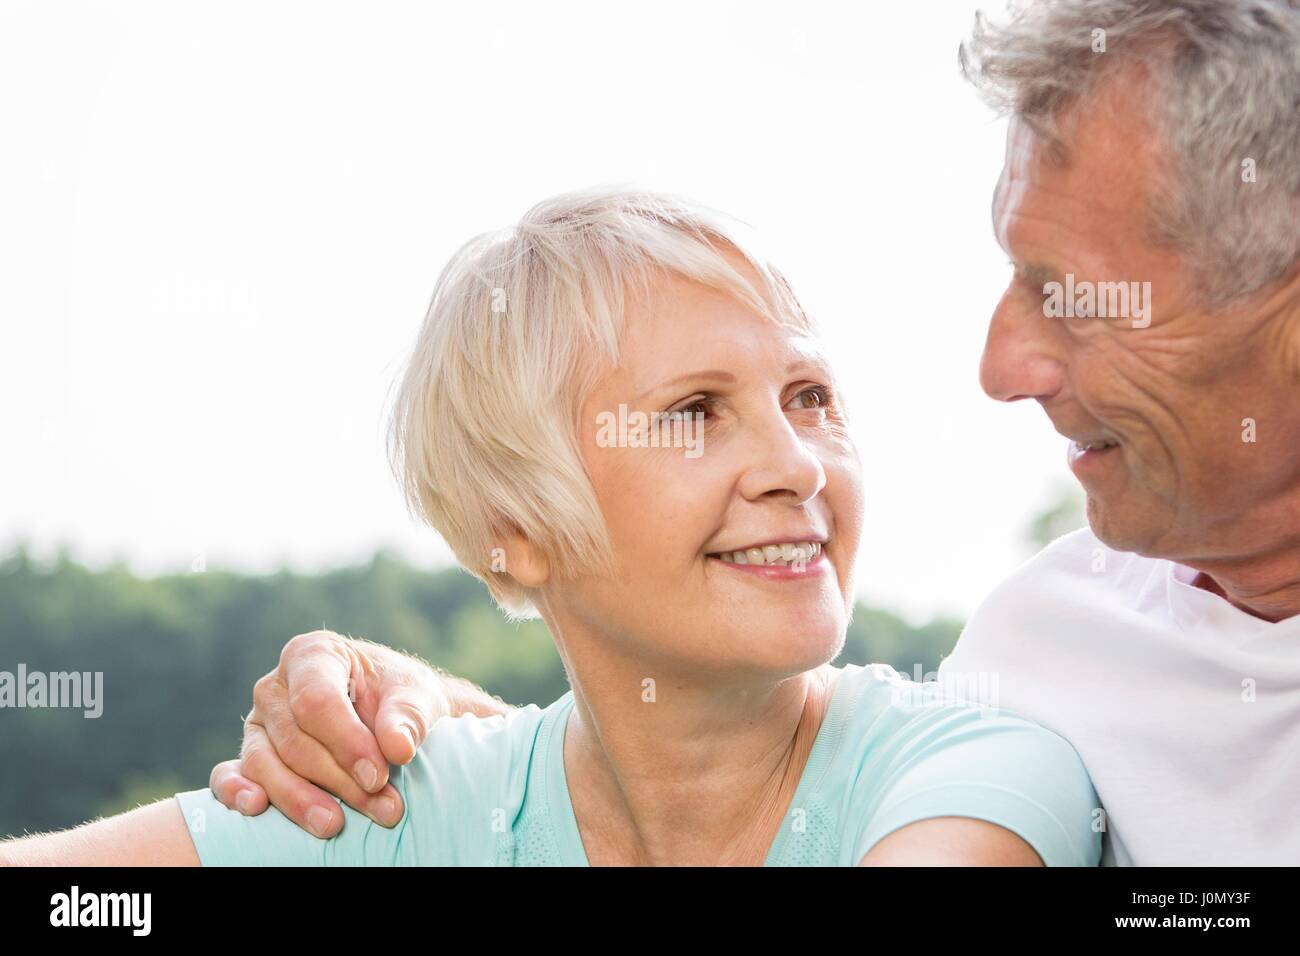 Las parejas ancianas sonriendo, el hombre con el brazo alrededor de la mujer. Foto de stock